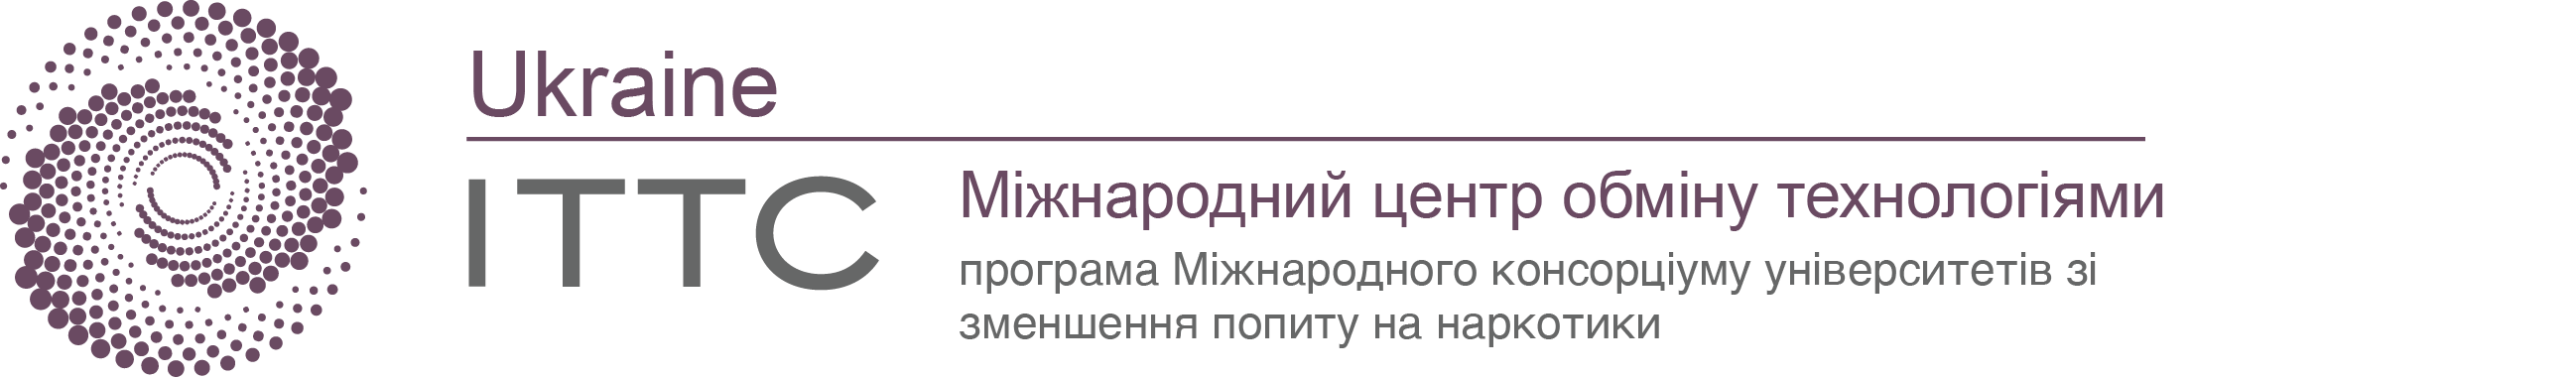 Ukraine International Technology Transfer Center Logo